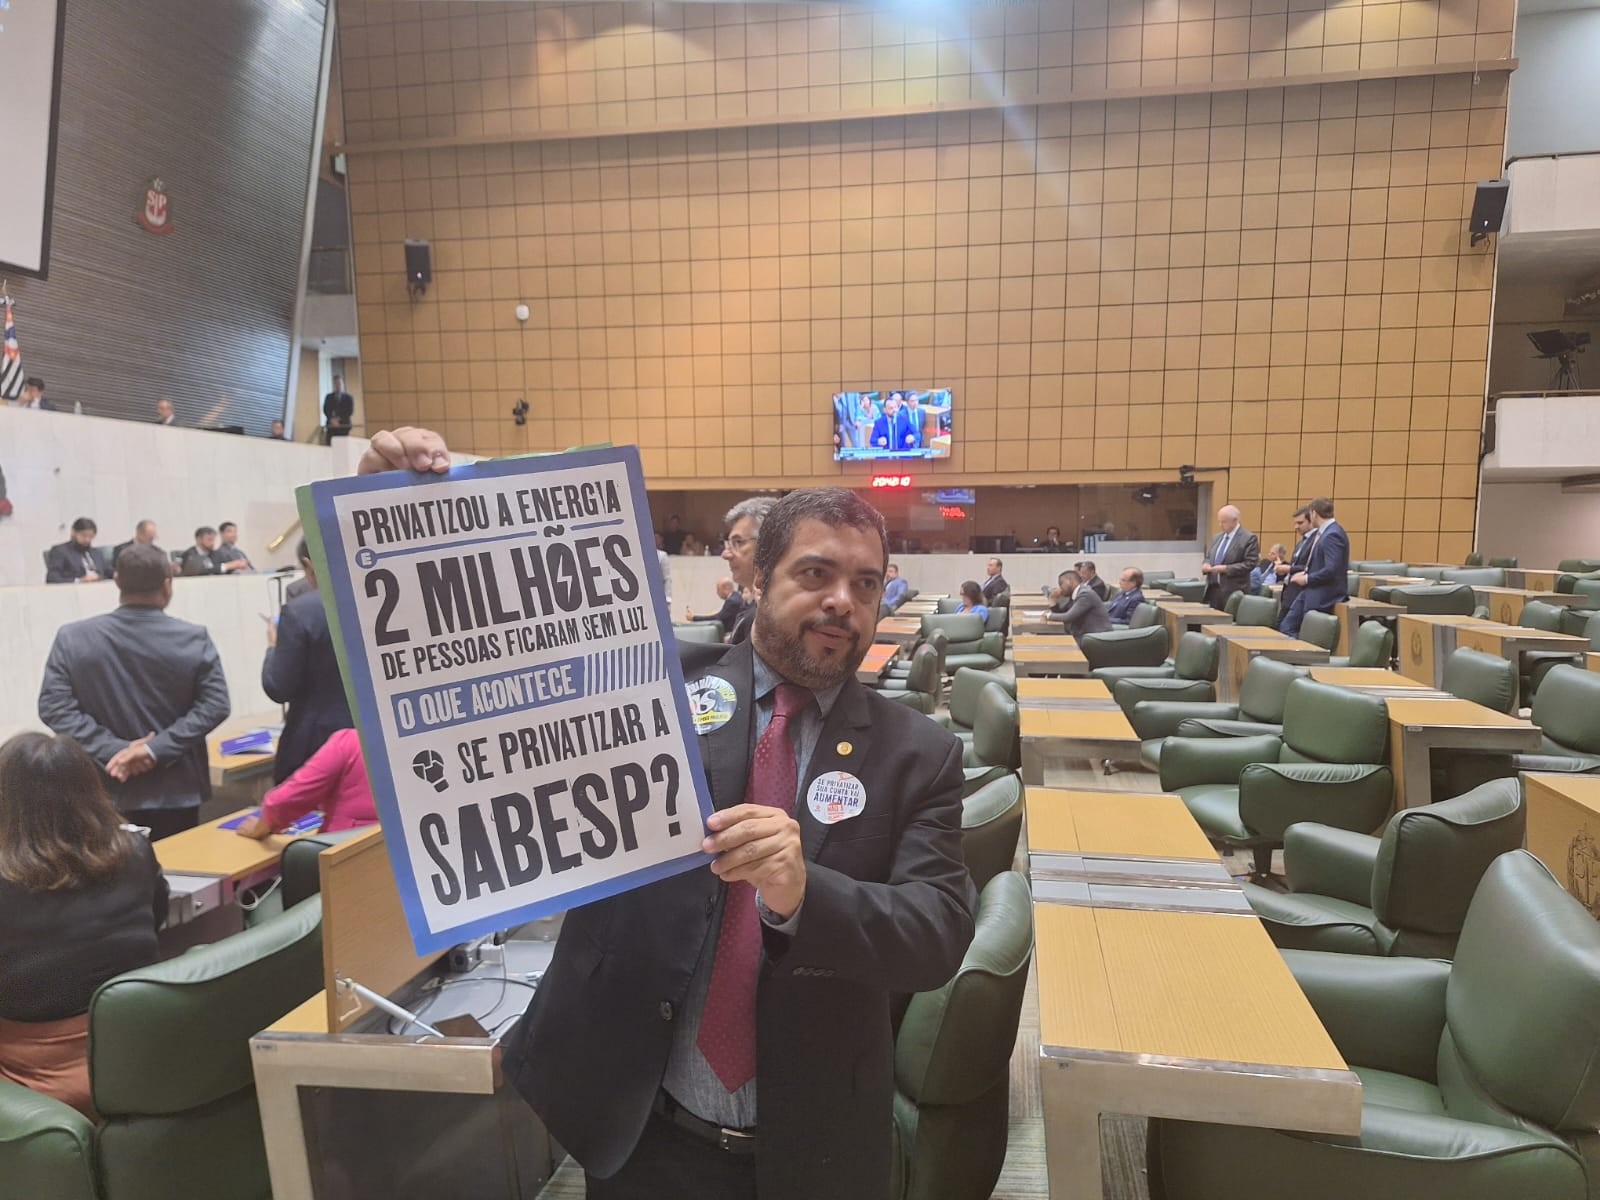 Alesp começa a discutir privatização da Sabesp; oposição tenta atrasar votação, que deve ocorrer nesta semana